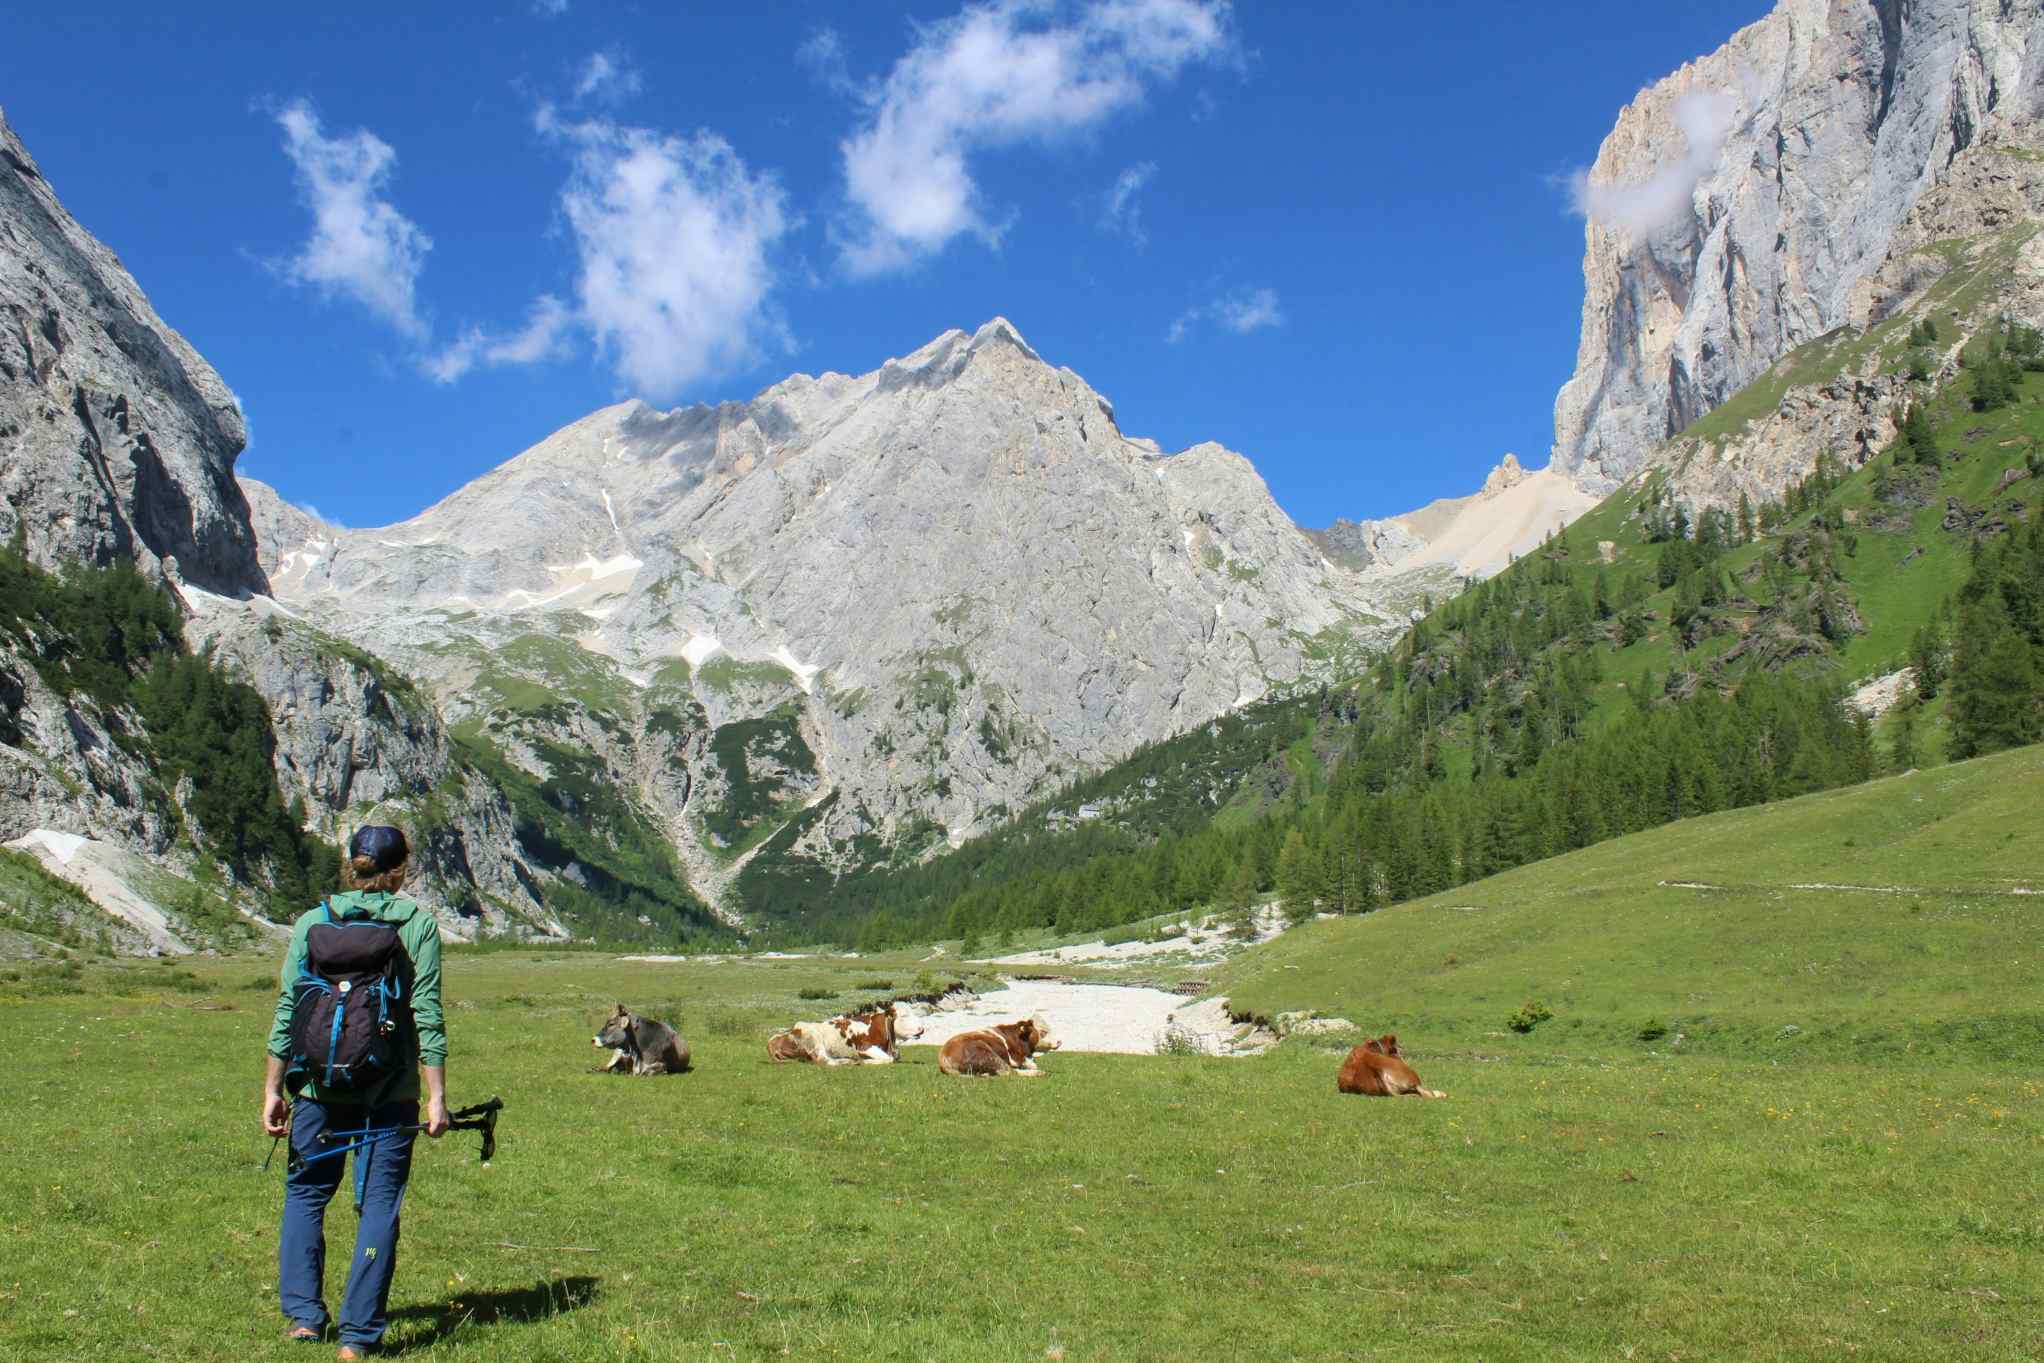 Valle Ombretta, Italy. Photo: Host/Wild in the Dolomiti